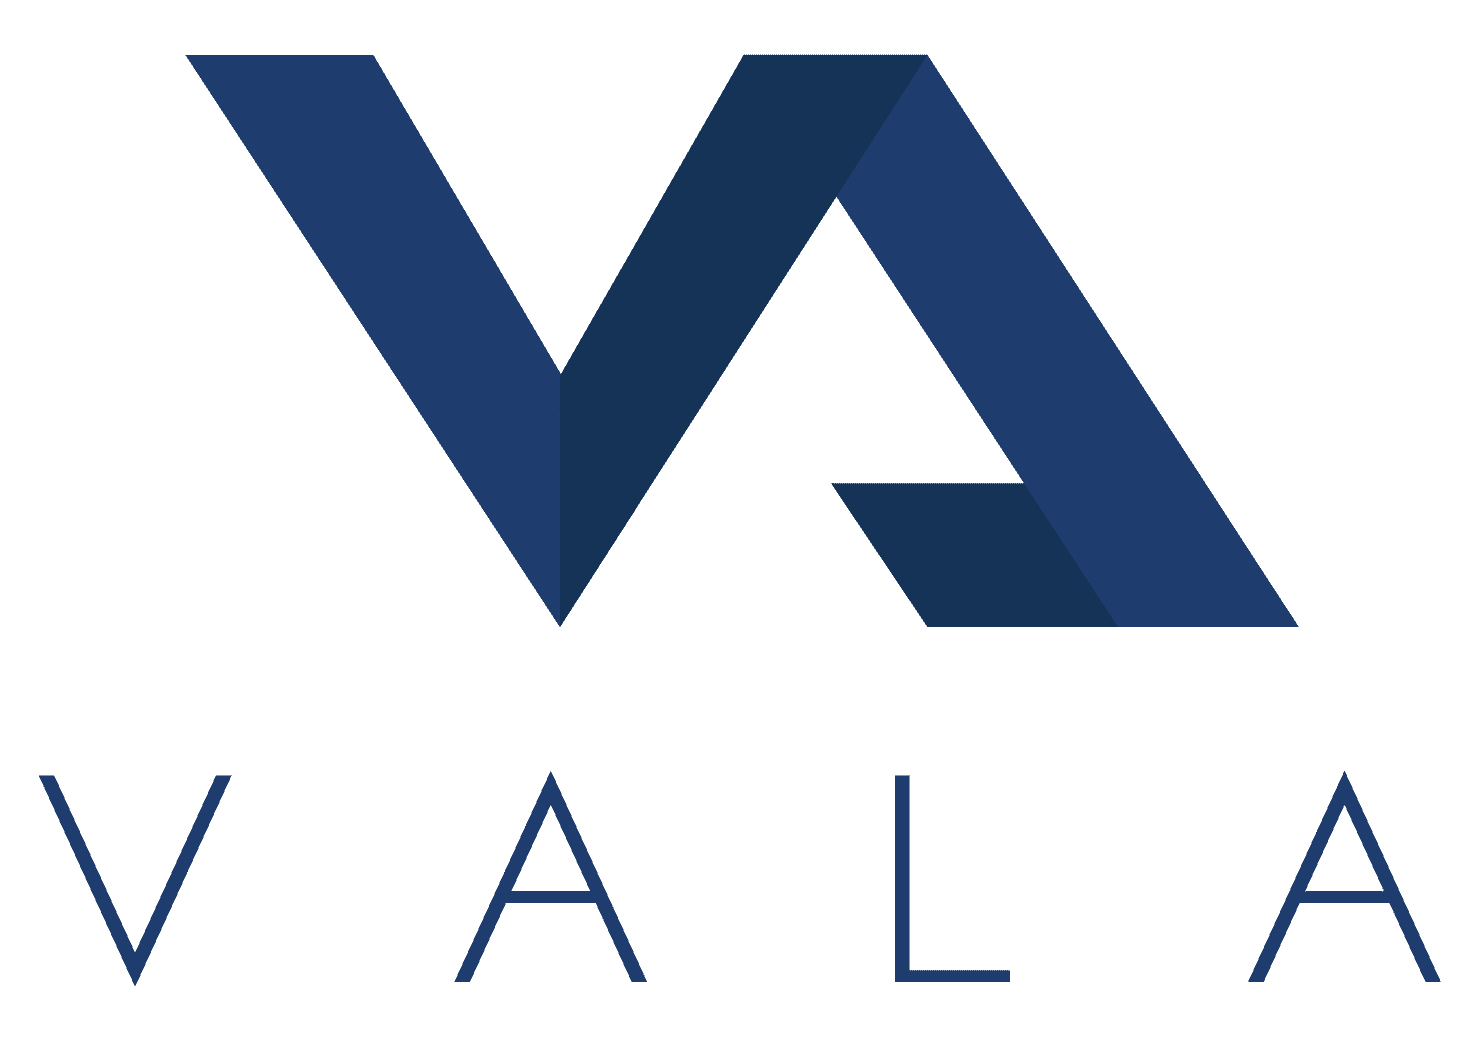 VALA logo